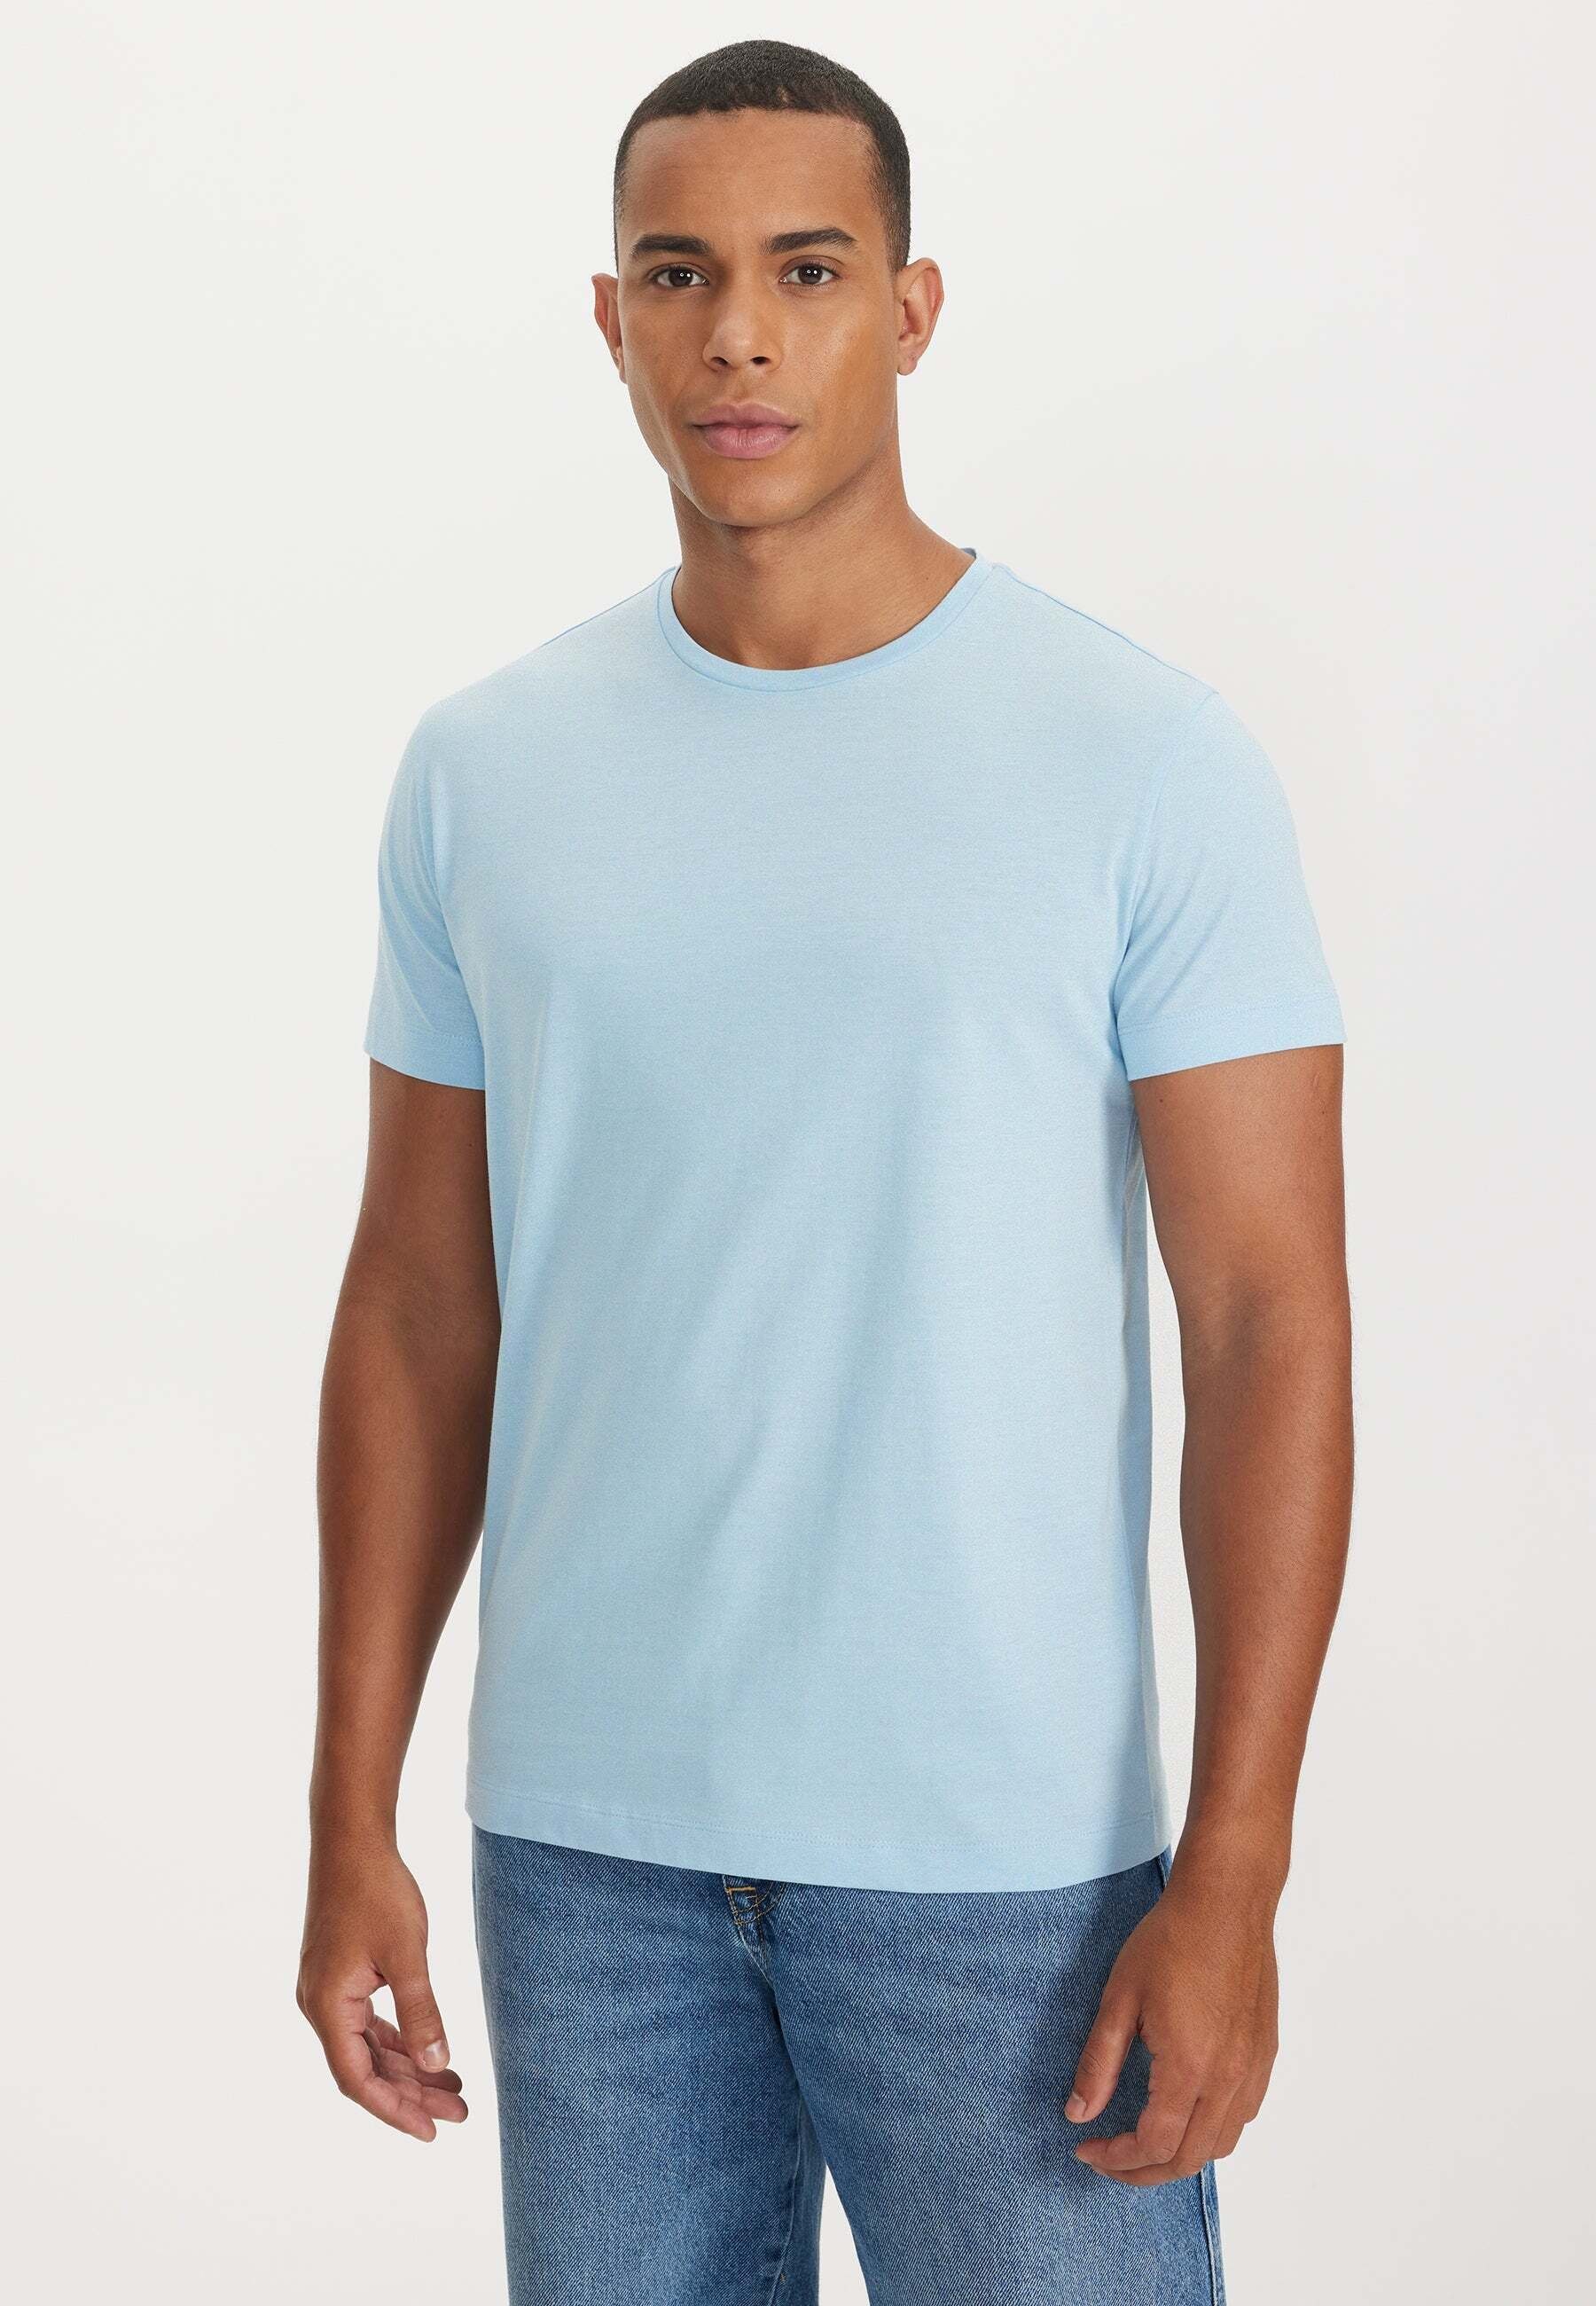 WESTMARK O-NECK LONDON Blue, DANIEL Baby (1-tlg) White T-Shirt 2-PACK